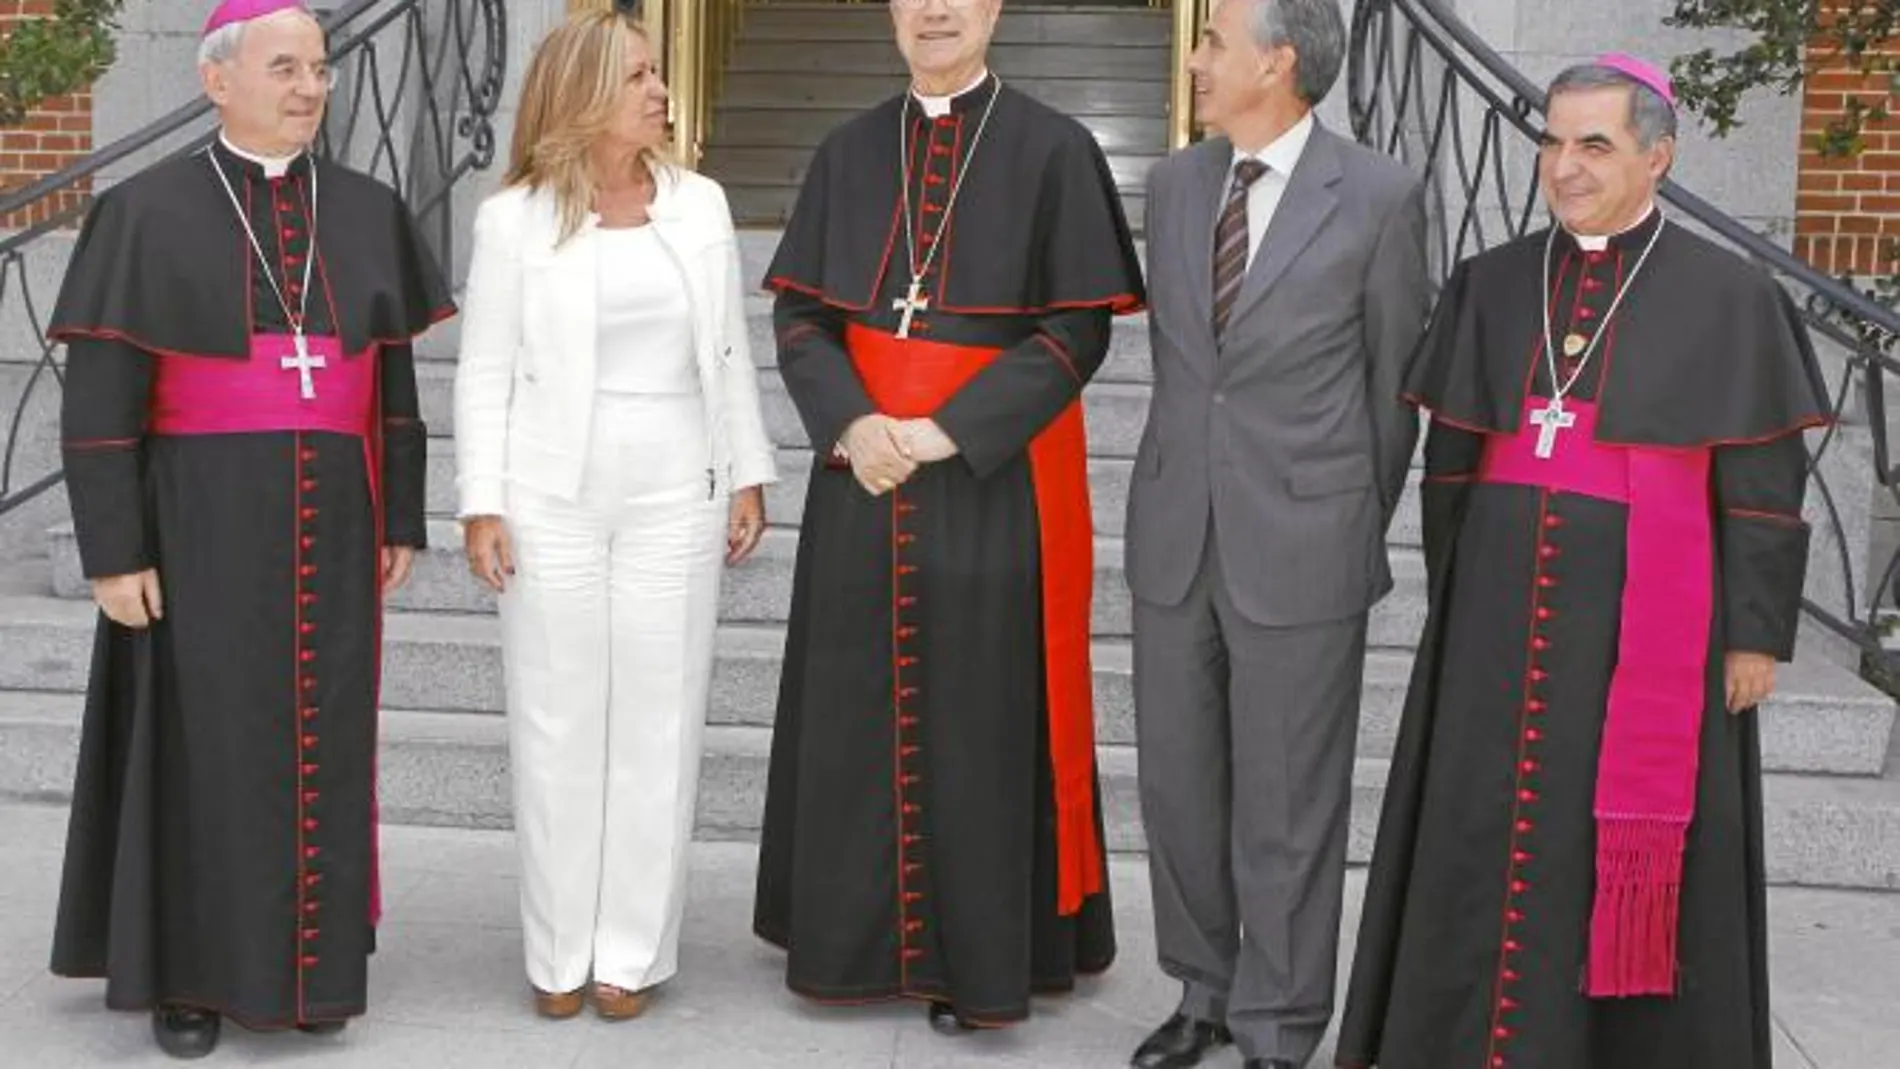 Imagen de archivo donde aparecen Trinidad Jiménez y Ramón Jáuregui, junto al cardenal Bertone (centro), el nuncio (izquierda) y Monseñor Becciu (derecha)